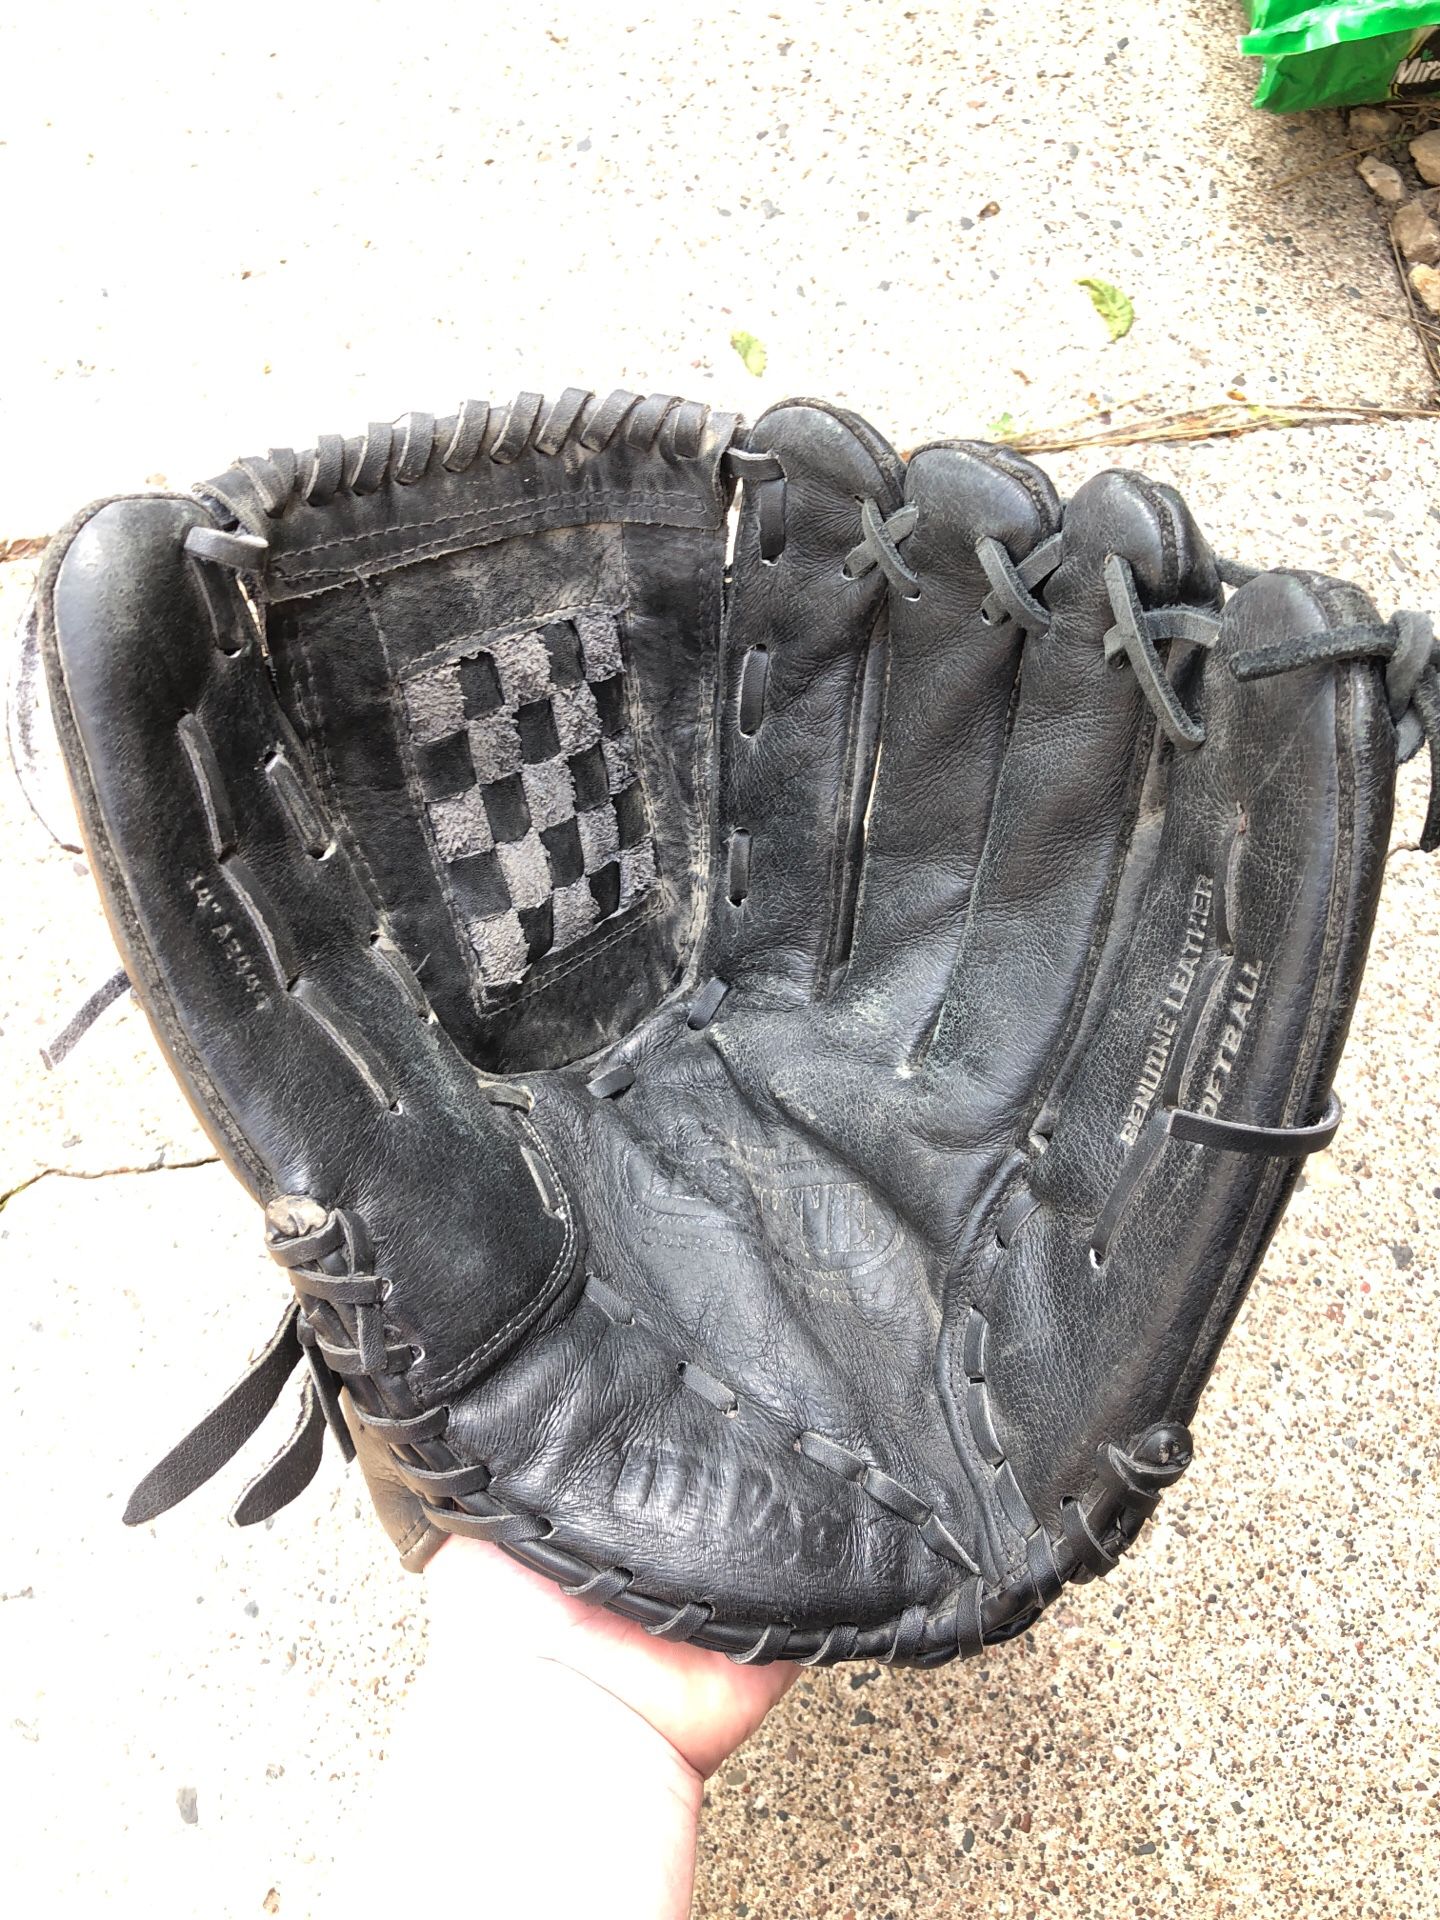 Men’s softball glove